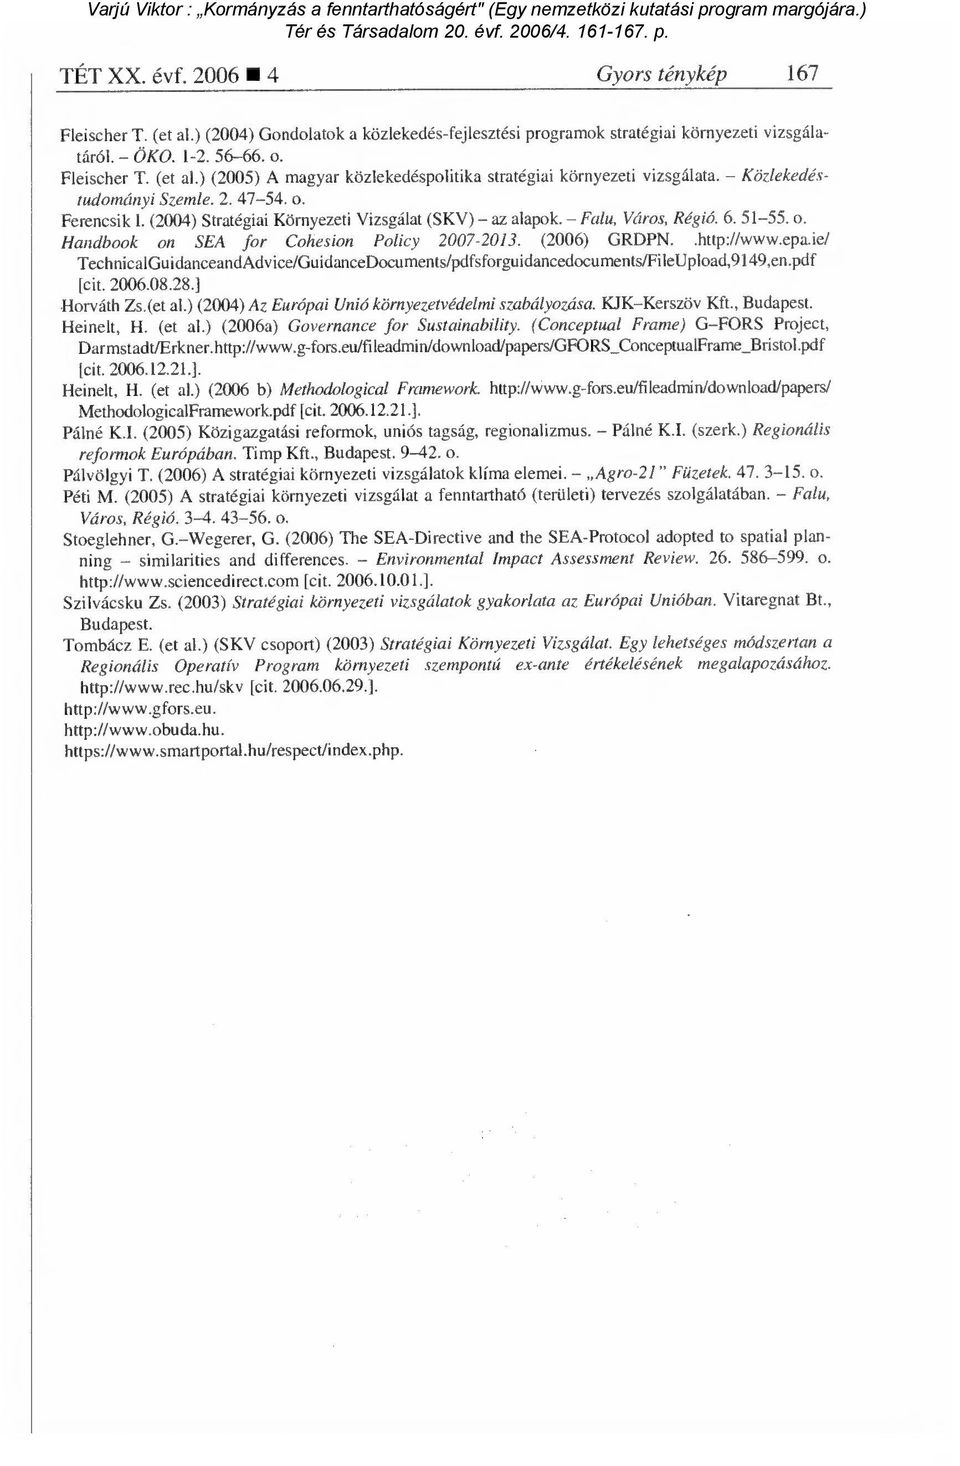 (2006) GRDPN..http://www.epa.ie/ TechnicalGuidanceandAdvice/GuidanceDocuments/pdfsforguidancedocuments/FileUPload,9149,en.Pdf [cit. 2006.08.28.] Horváth Zs.(et al.